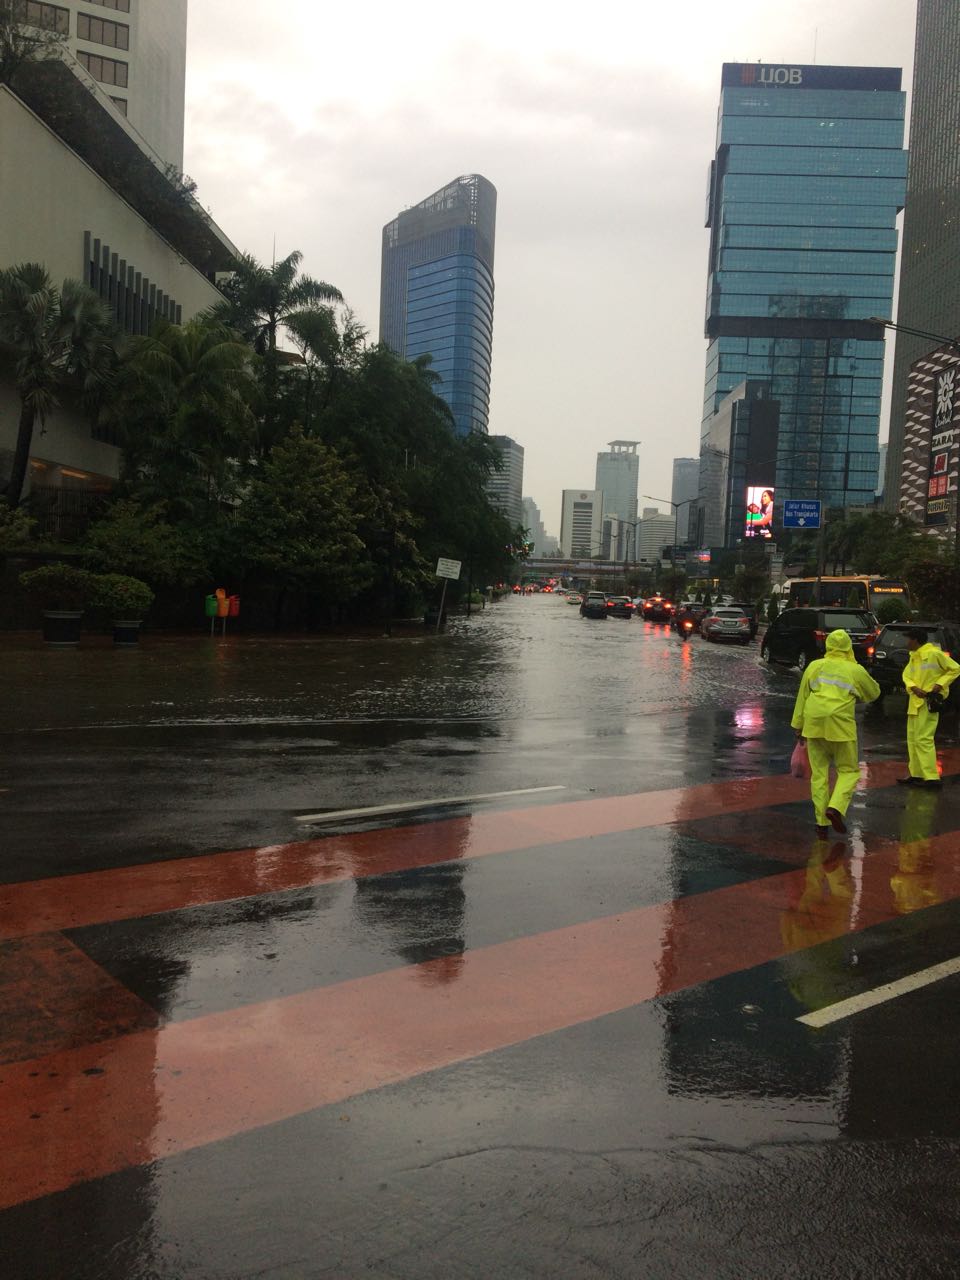 Diguyur hujan lebat, begini 10 potret kondisi Jakarta saat kebanjiran